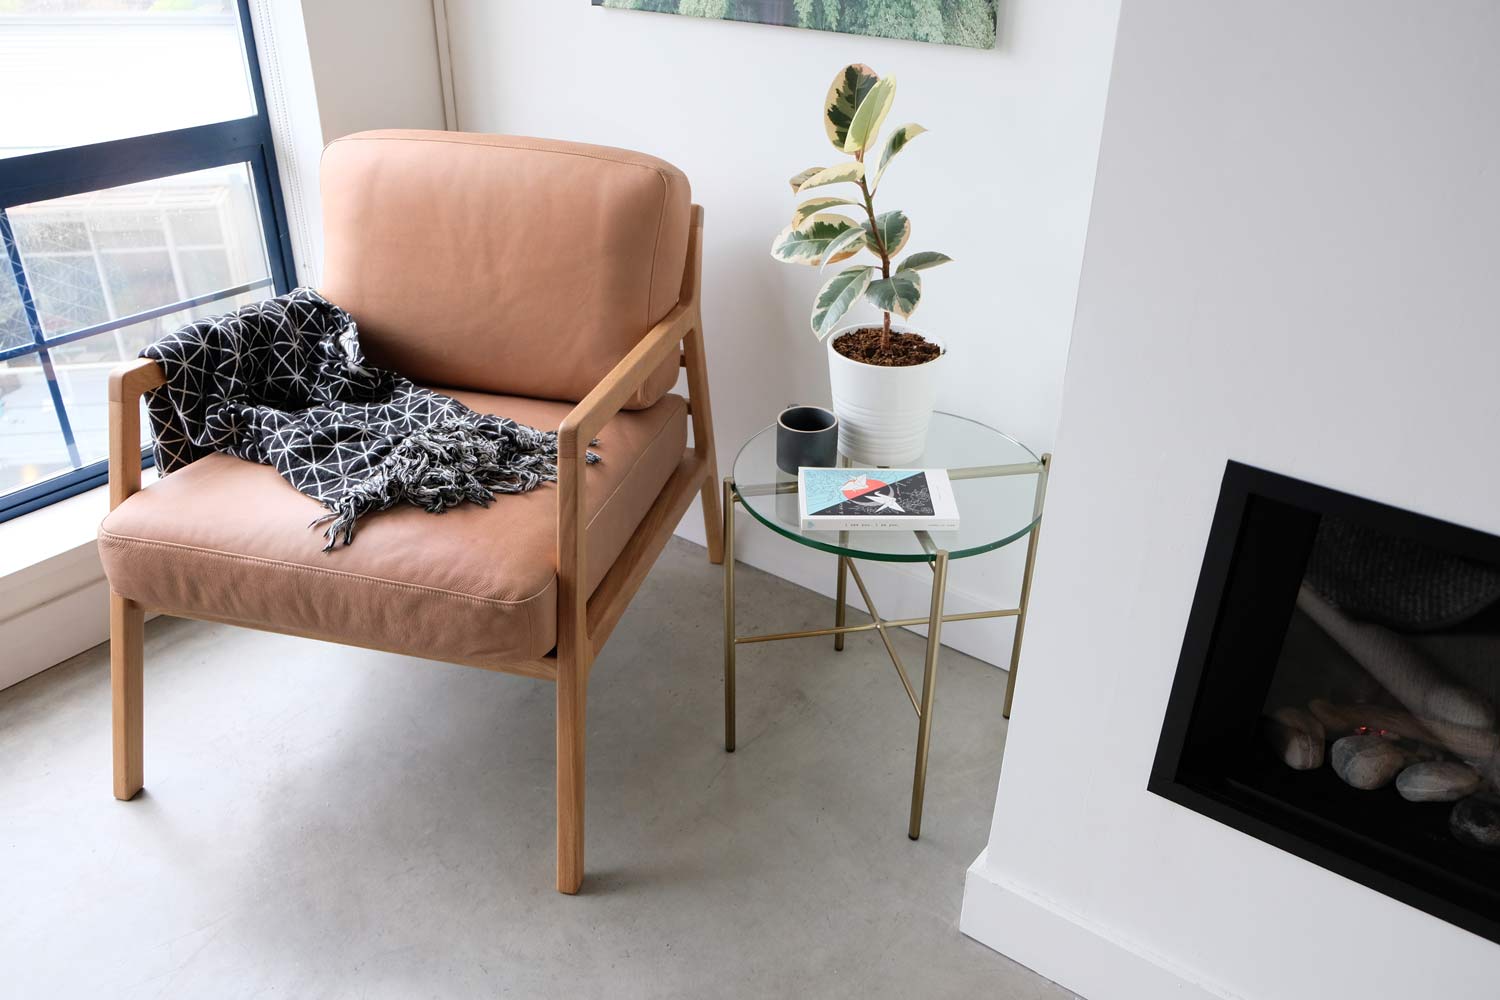 Article Denman Chair in Canyon Tan - loft apartment @visualheart